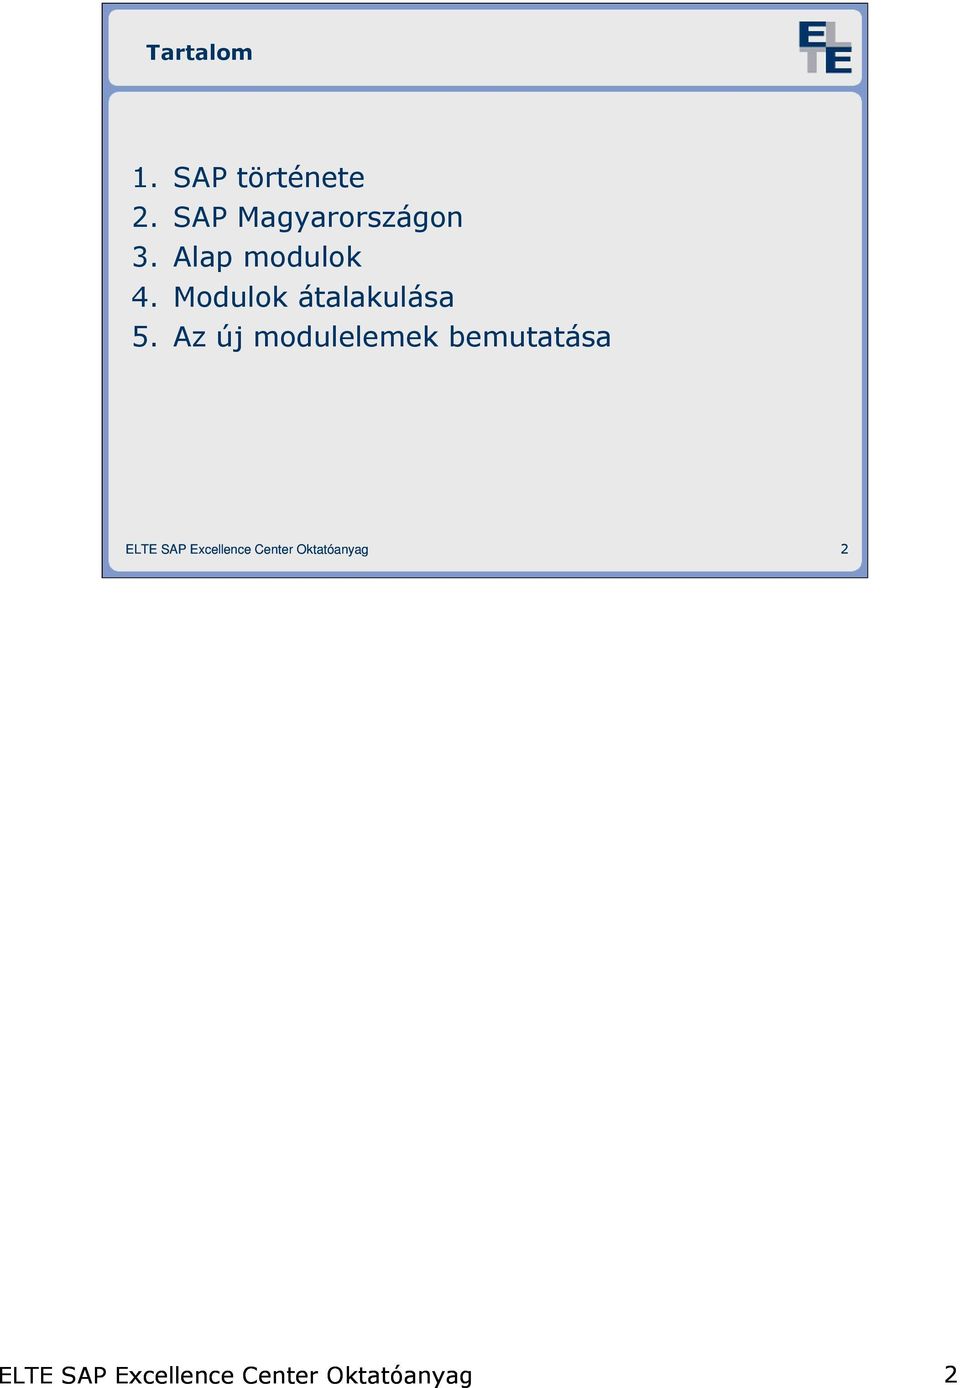 Bevezetés az SAP világába. 1. SAP áttekintés - PDF Ingyenes letöltés